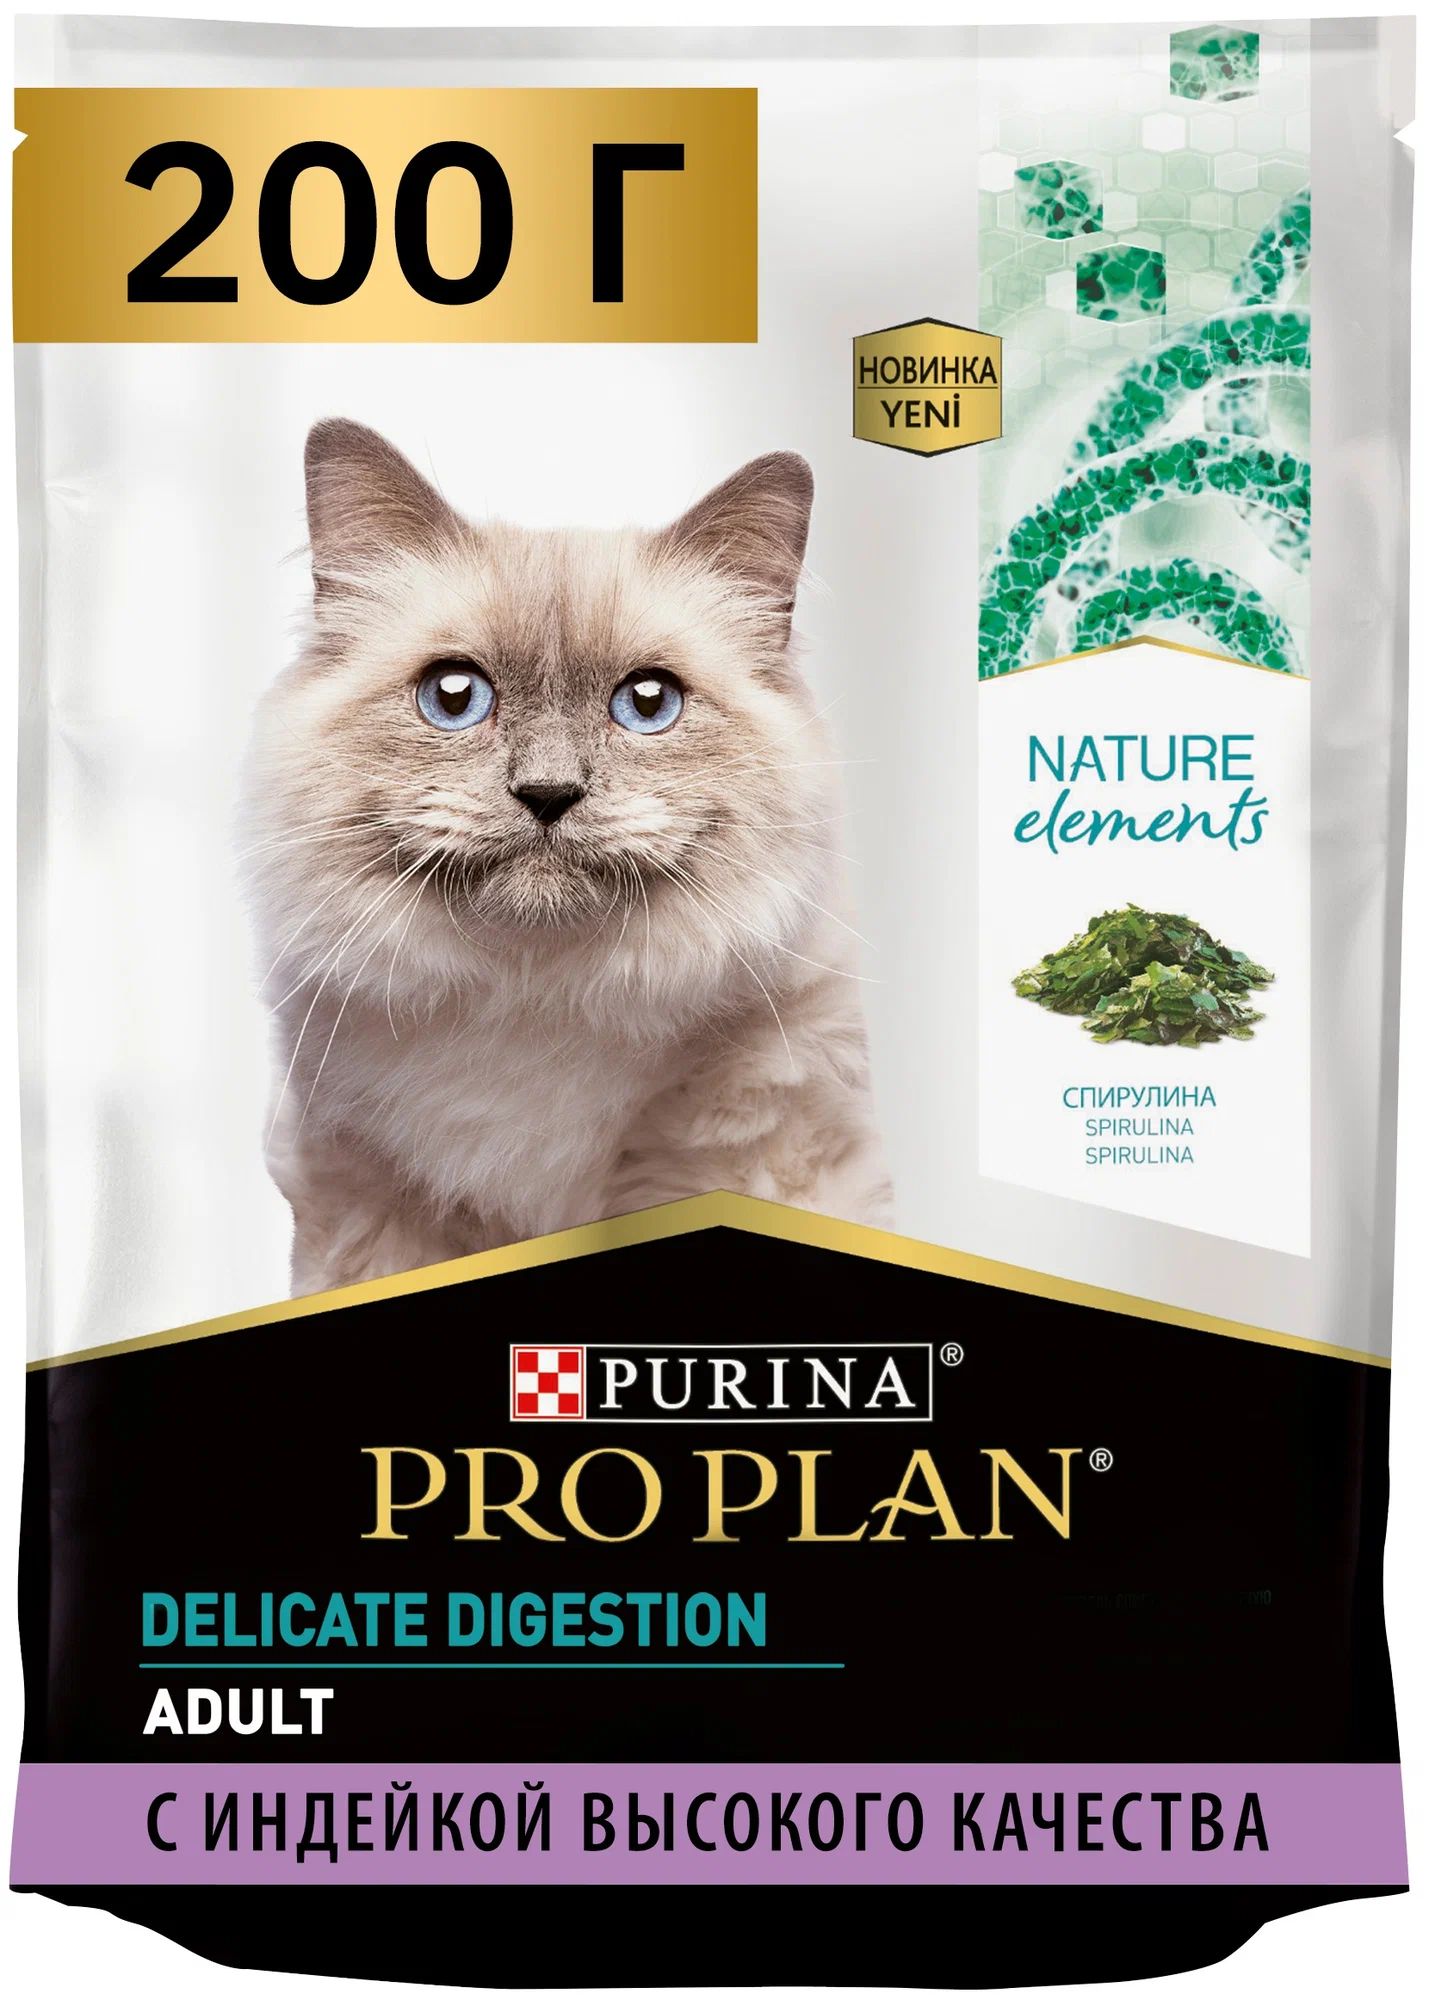 Сухой корм для кошек Purina Pro Plan Nature Elements с индейкой, 200 г